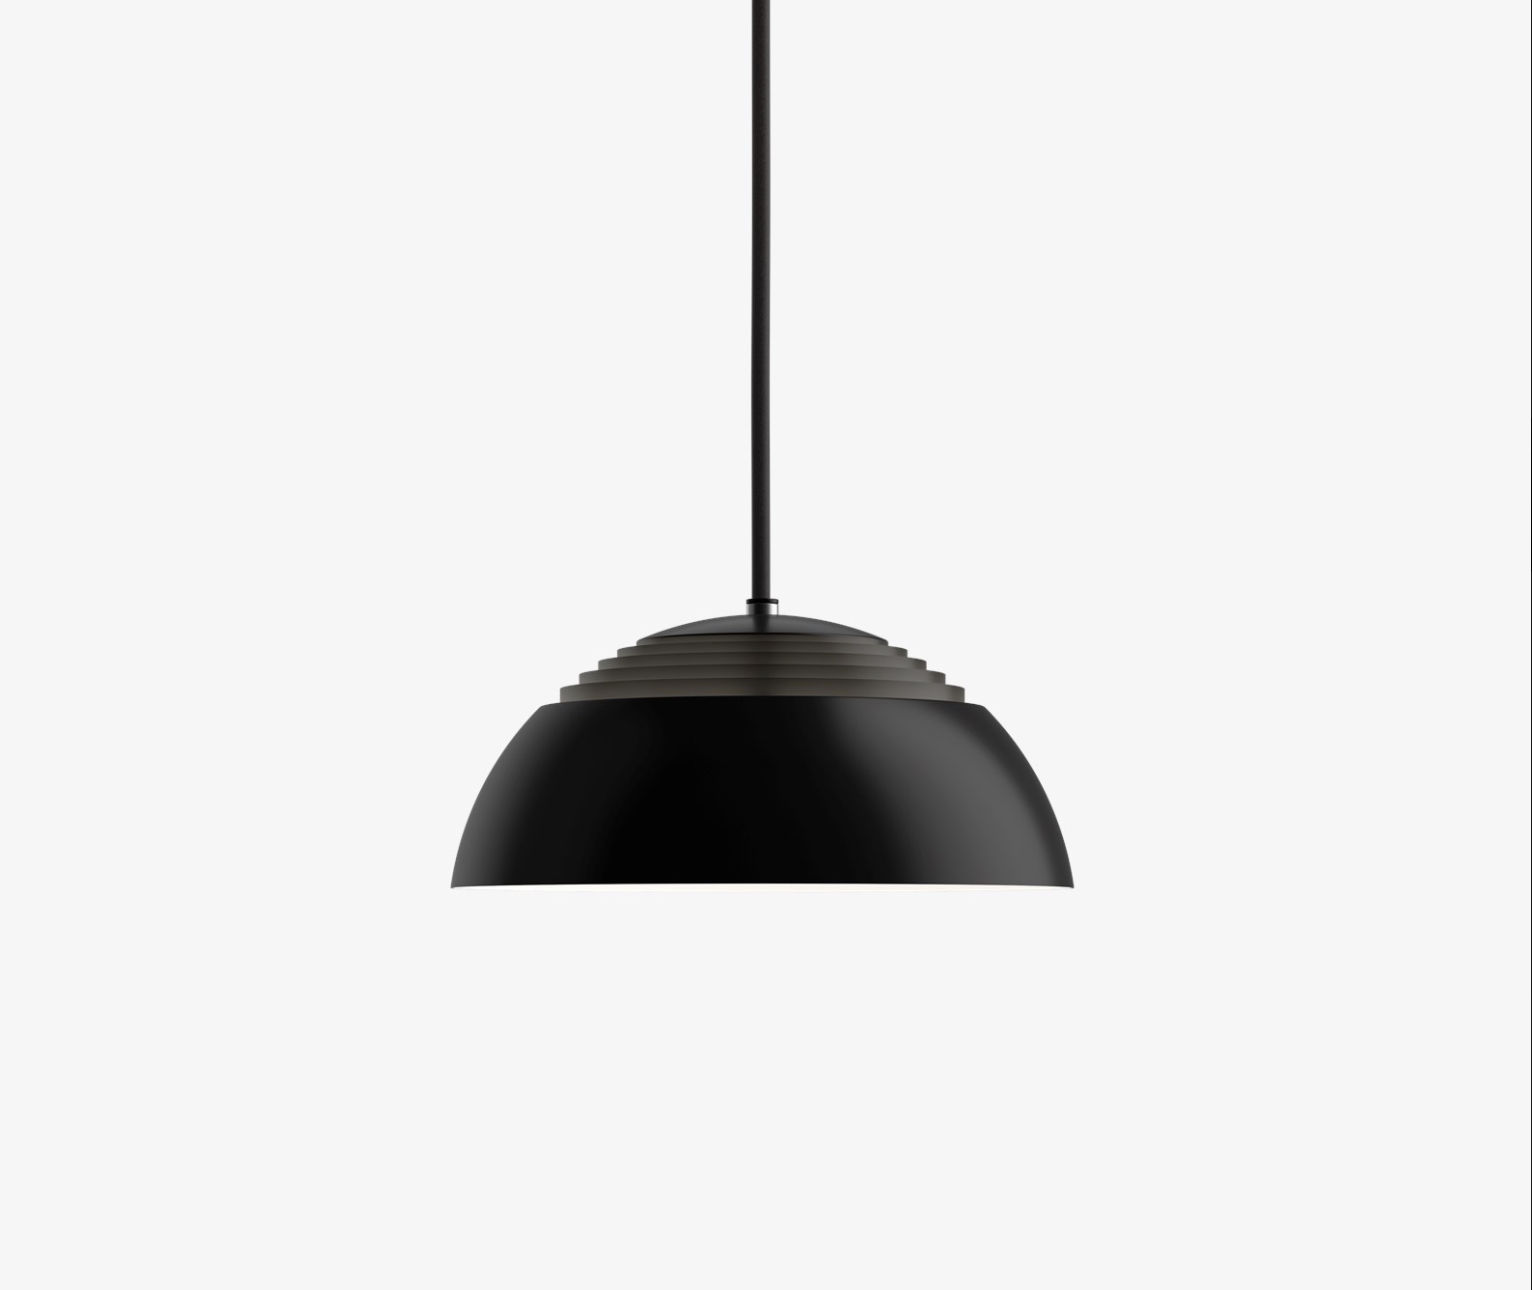 Arne Jacobsen Pendant lamp AJ ROYAL black by Louis Poulsen